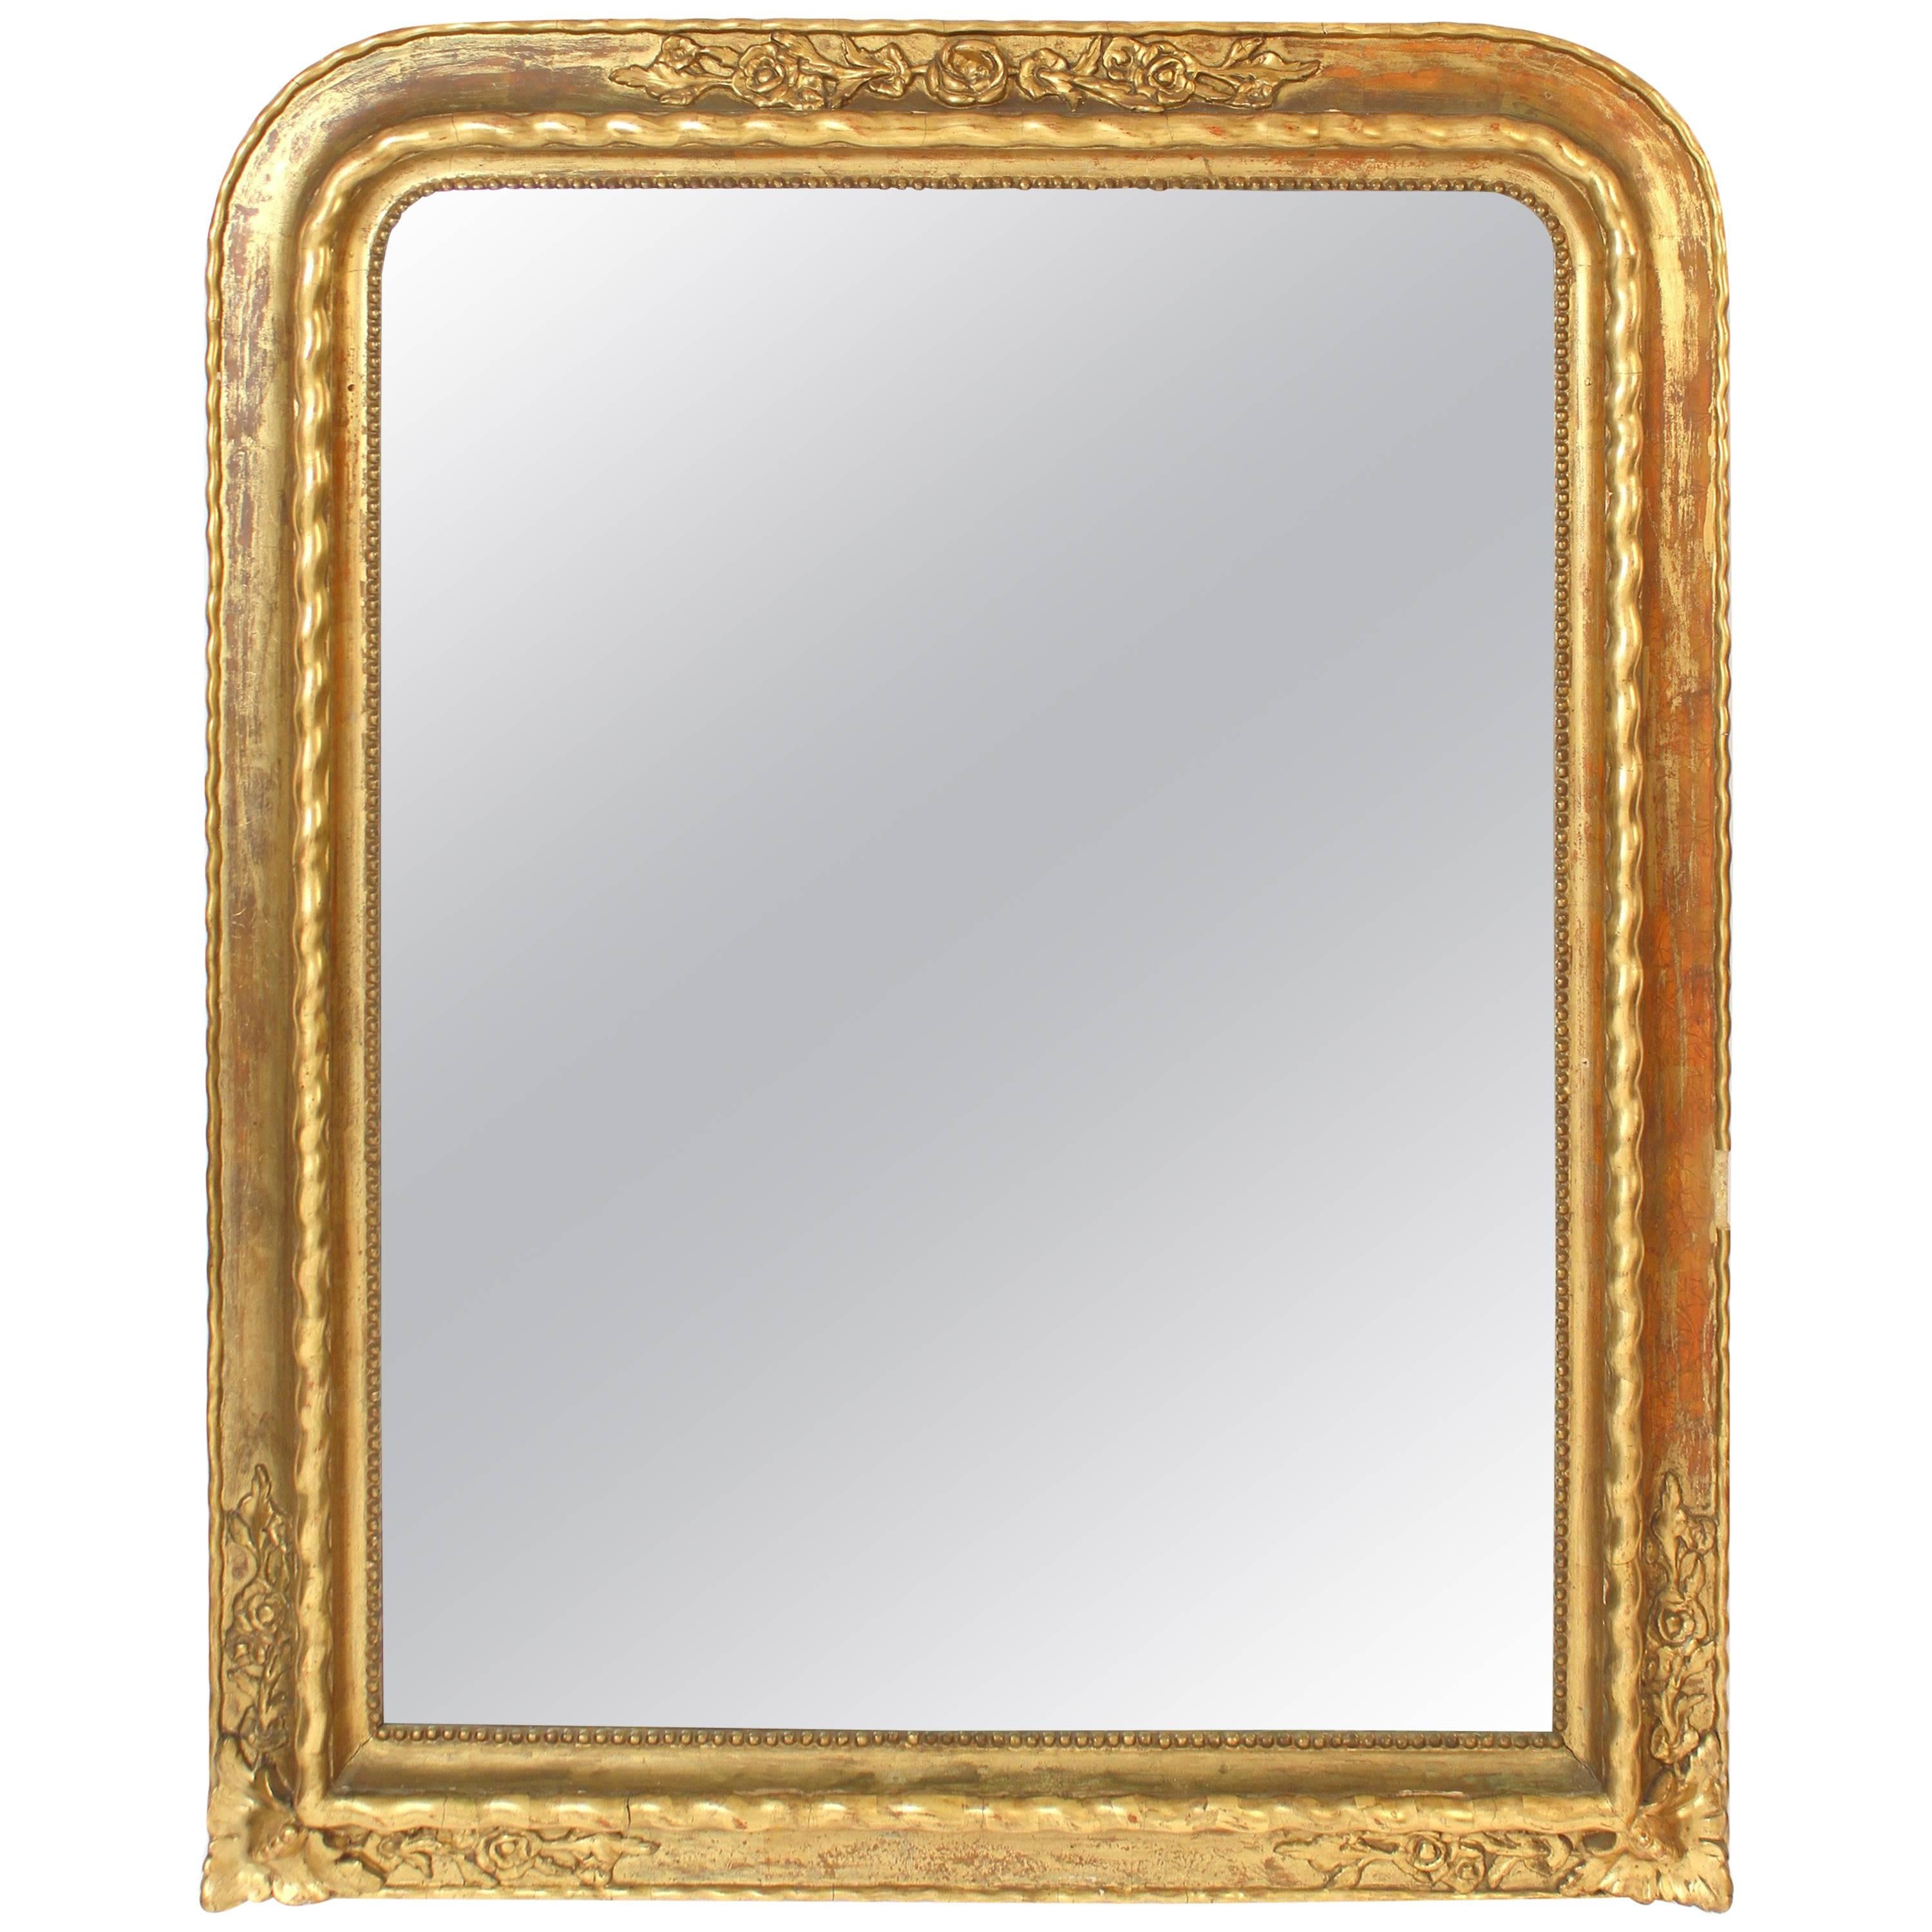 Napoleon III Style Gilt Wood Mirror